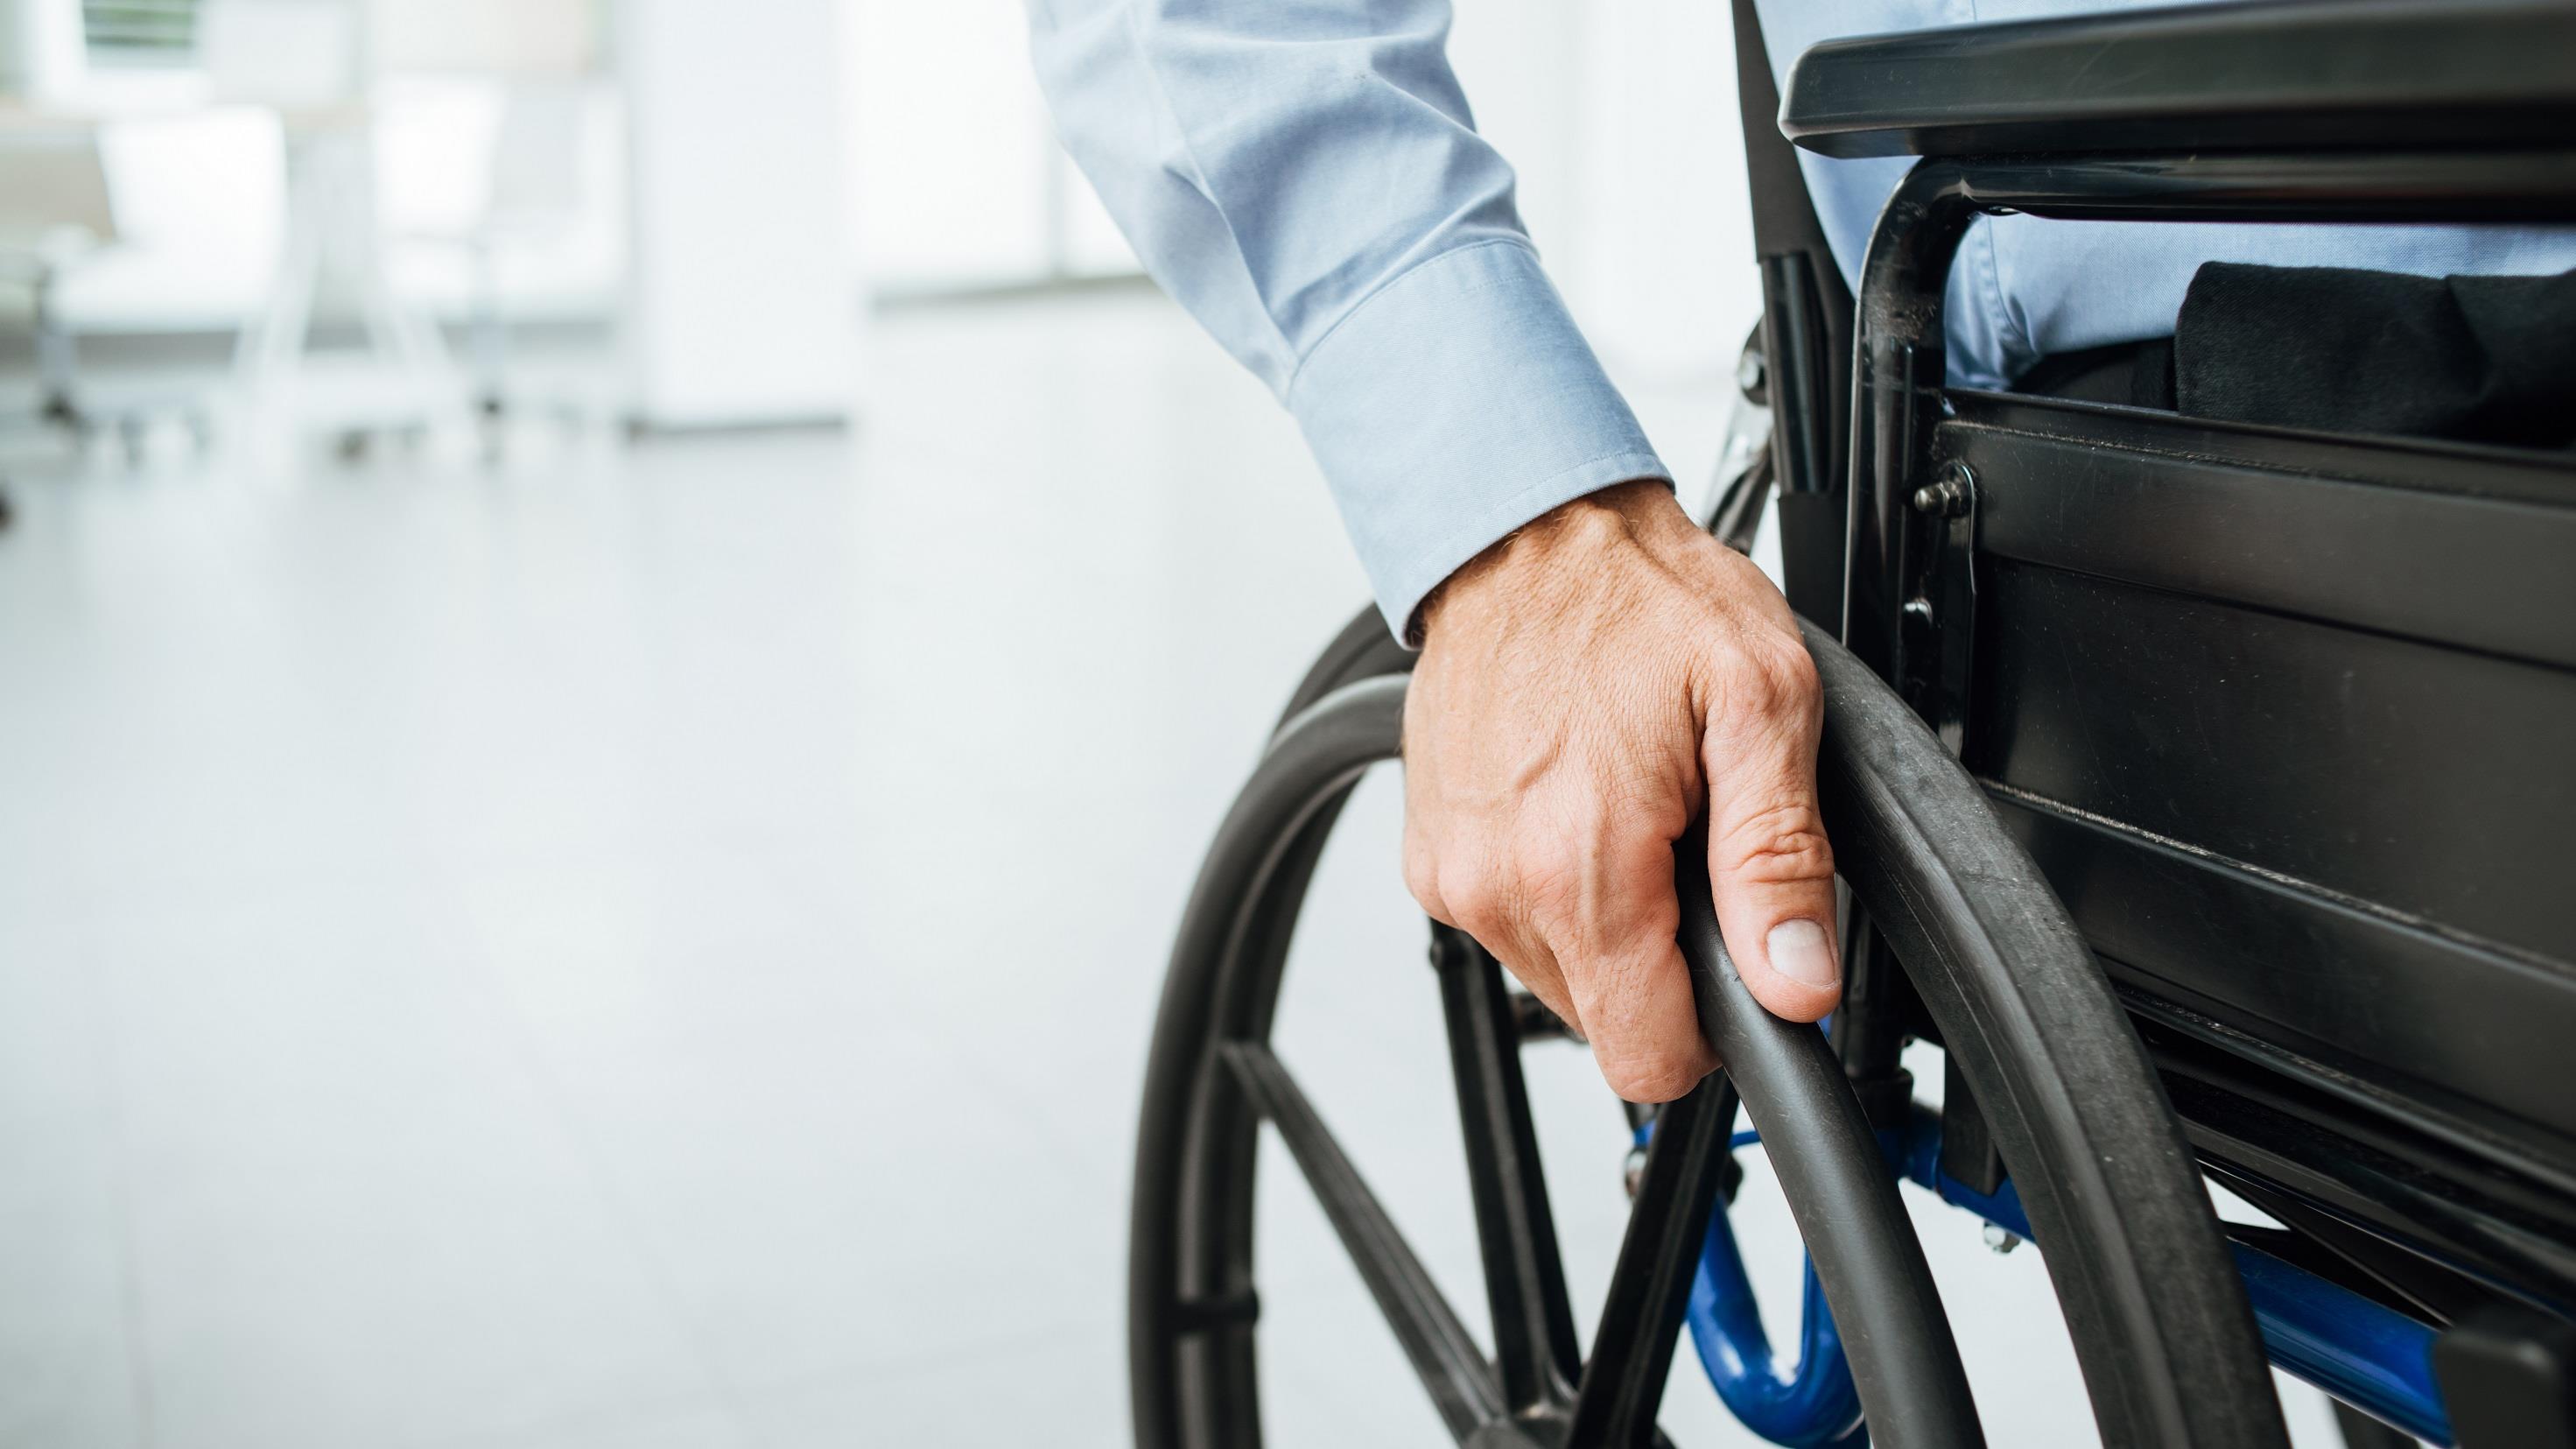 Un projet de loi sur l’accessibilité aux personnes handicapées
Un projet de loi sur l’accessibilité aux personnes handicapées